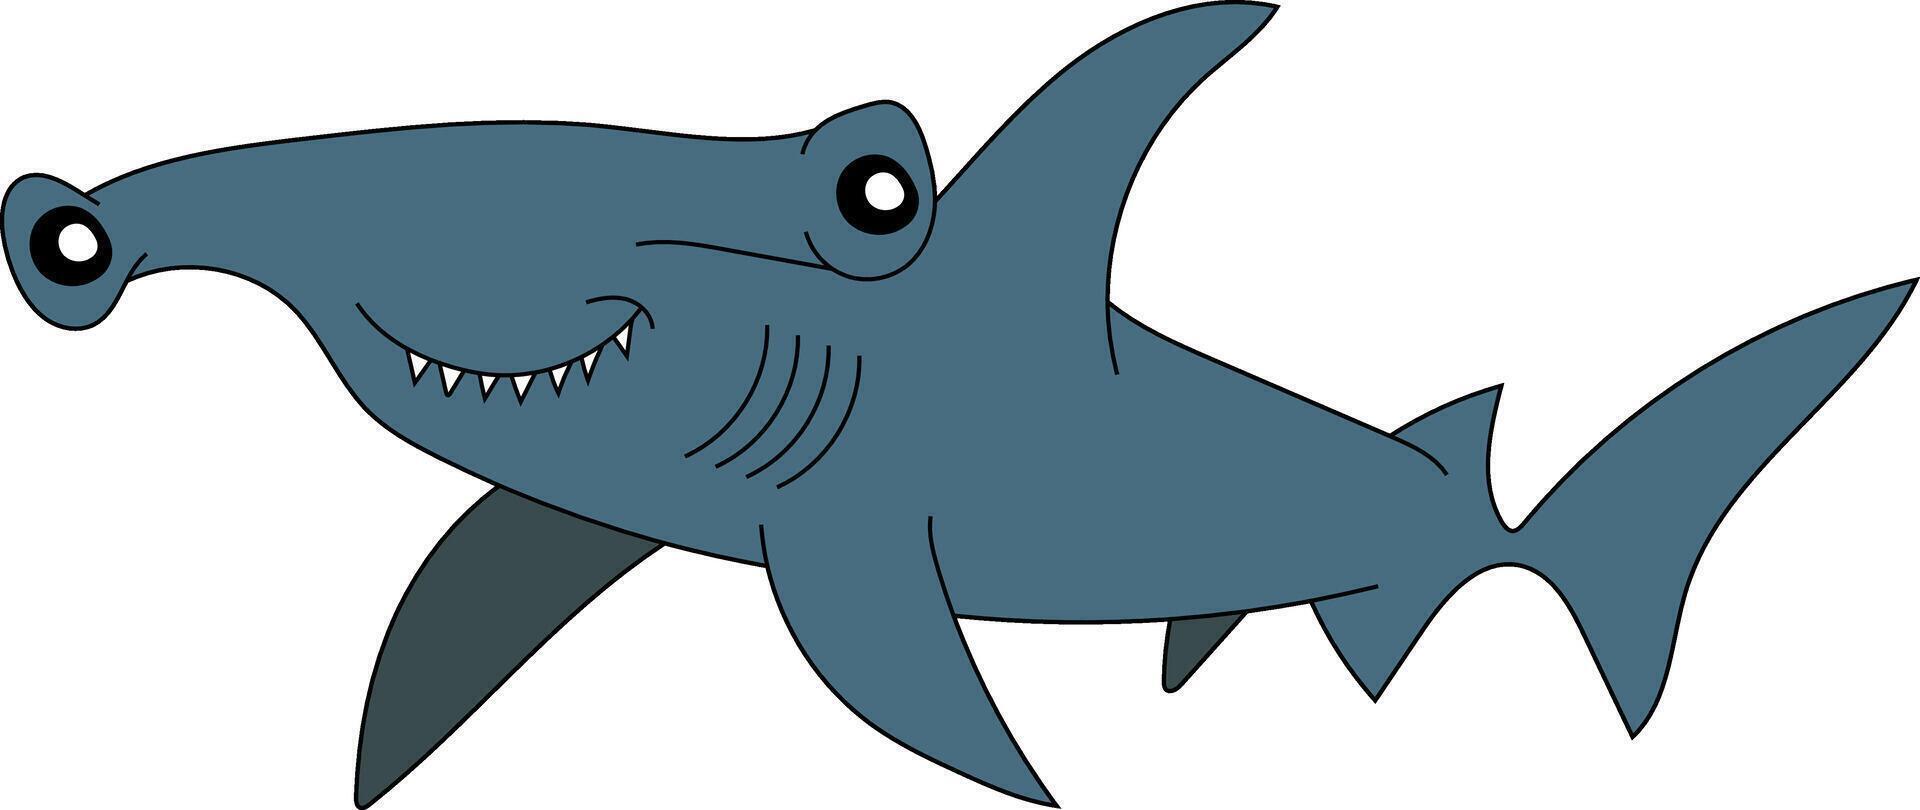 kleurrijk haai clip art voor geliefden van zee leven vector